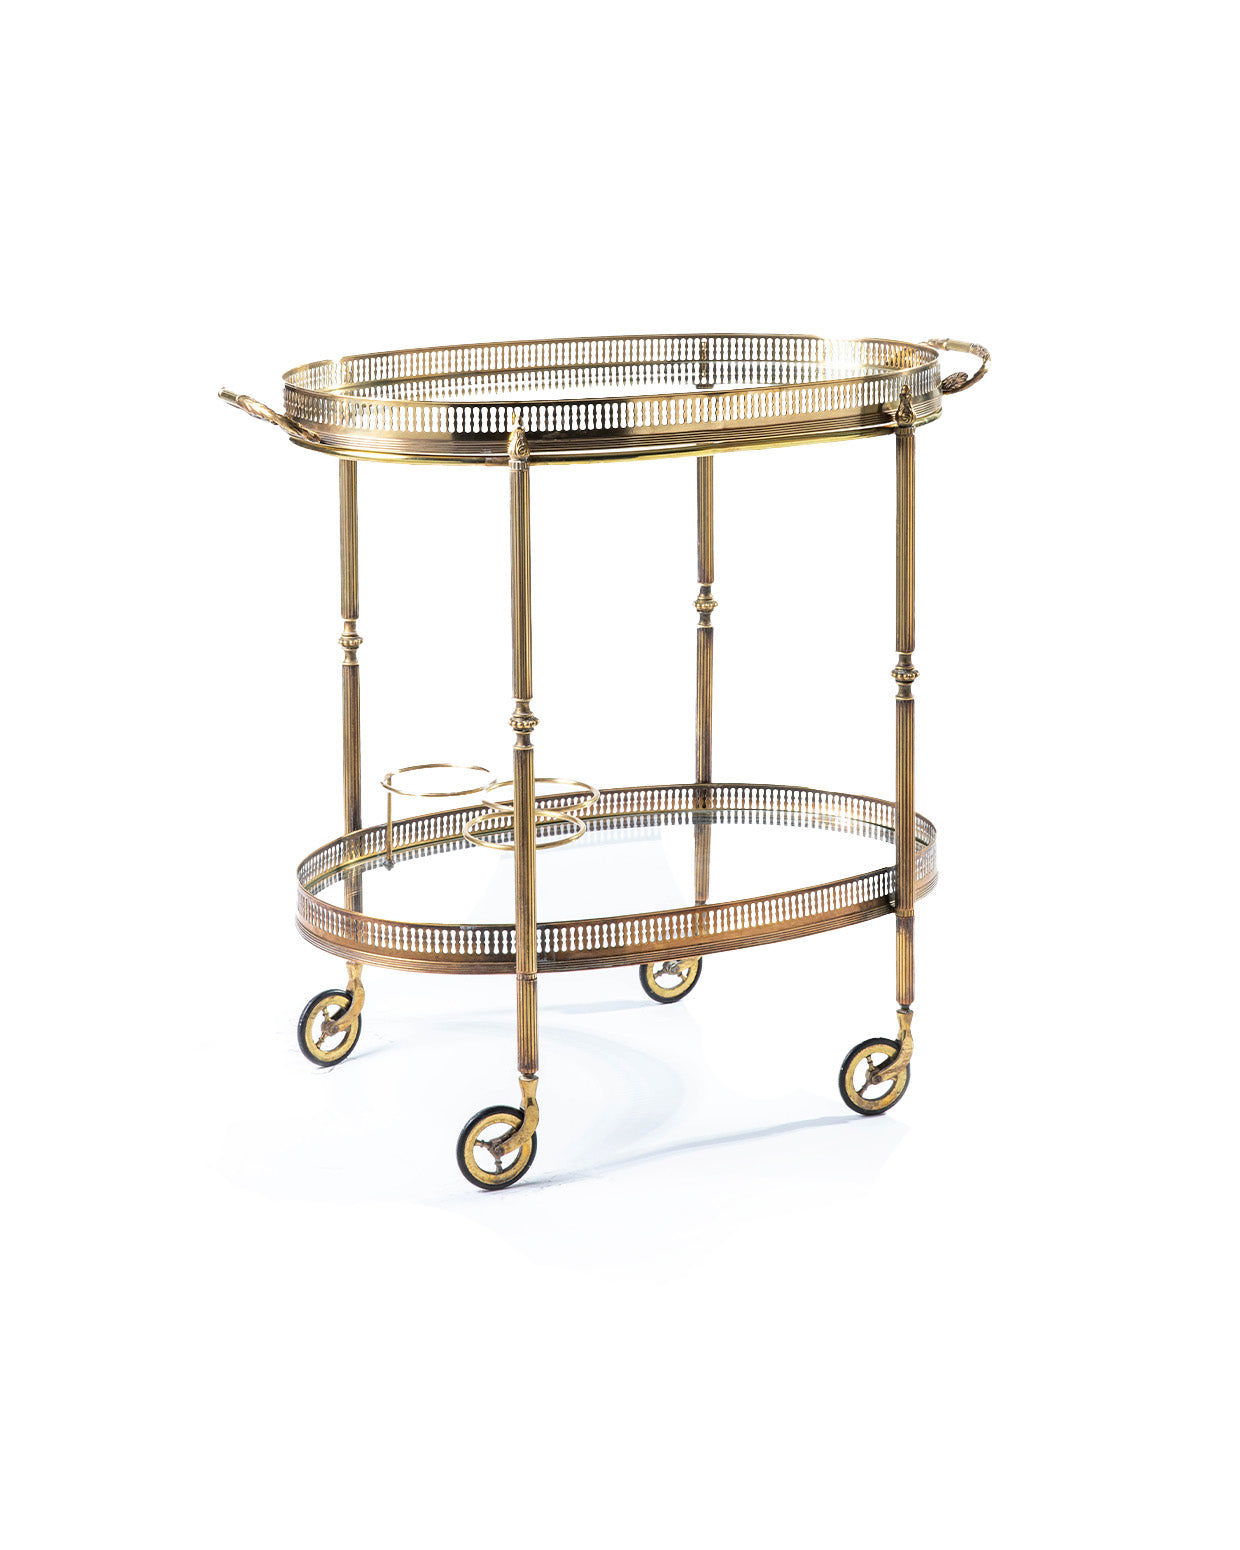 Products Carrello ovale in ottone dorato modello Galleria - 1960 - "Gallery" design oval gold brass Bar Cart